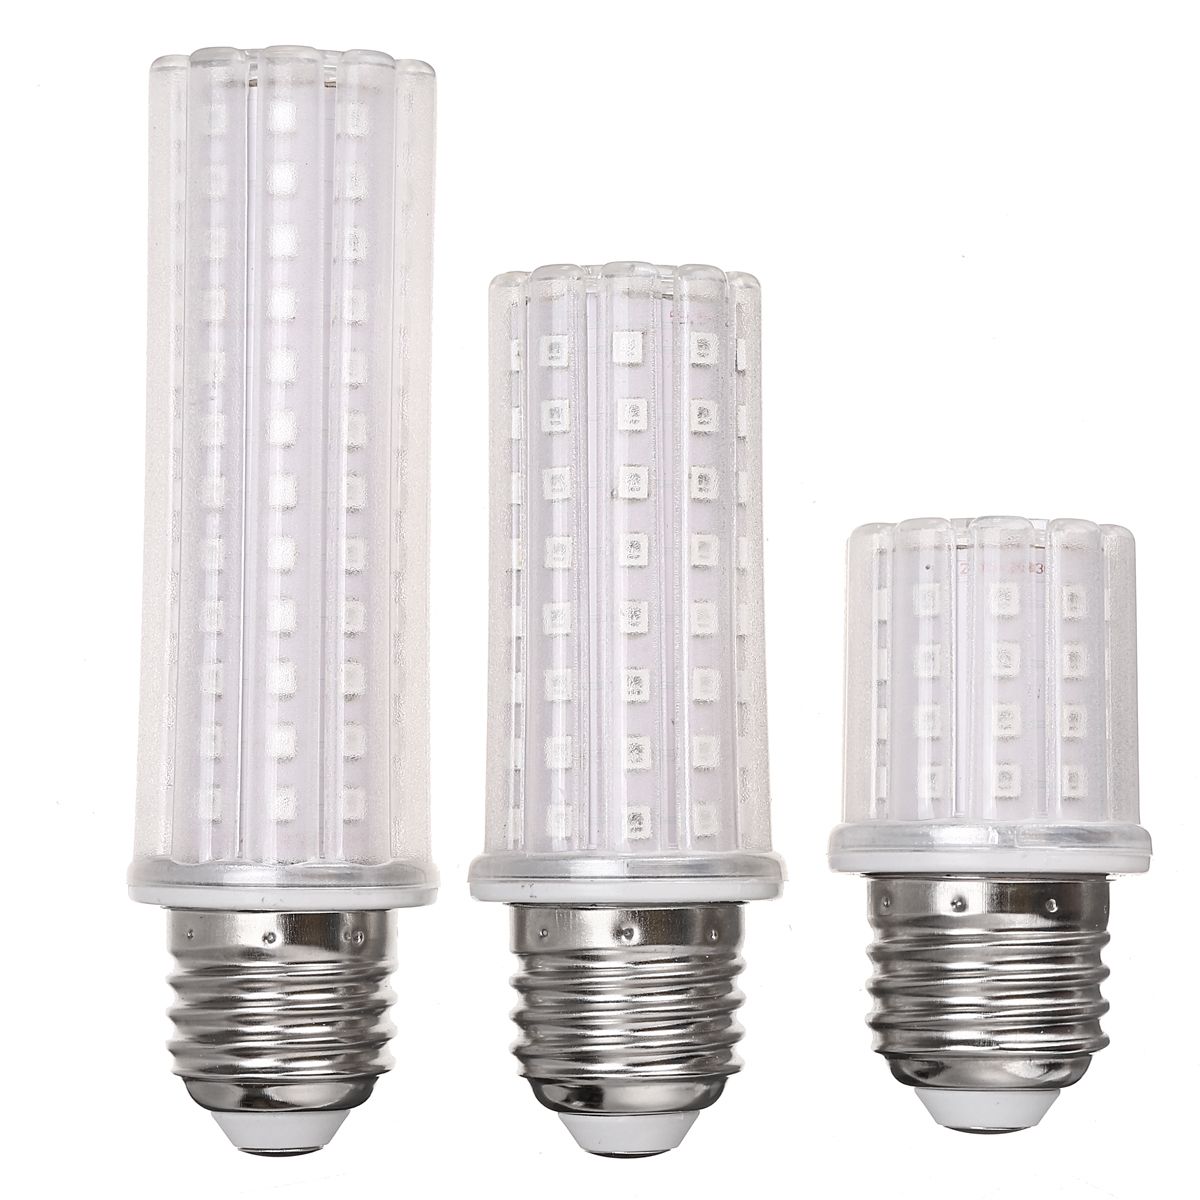 5W-10W-12W-395nm-E27-LED-Bulb-UV-Pureple-Lamp-Indoor-Bedroom-Home-Light-110-220V-1688918